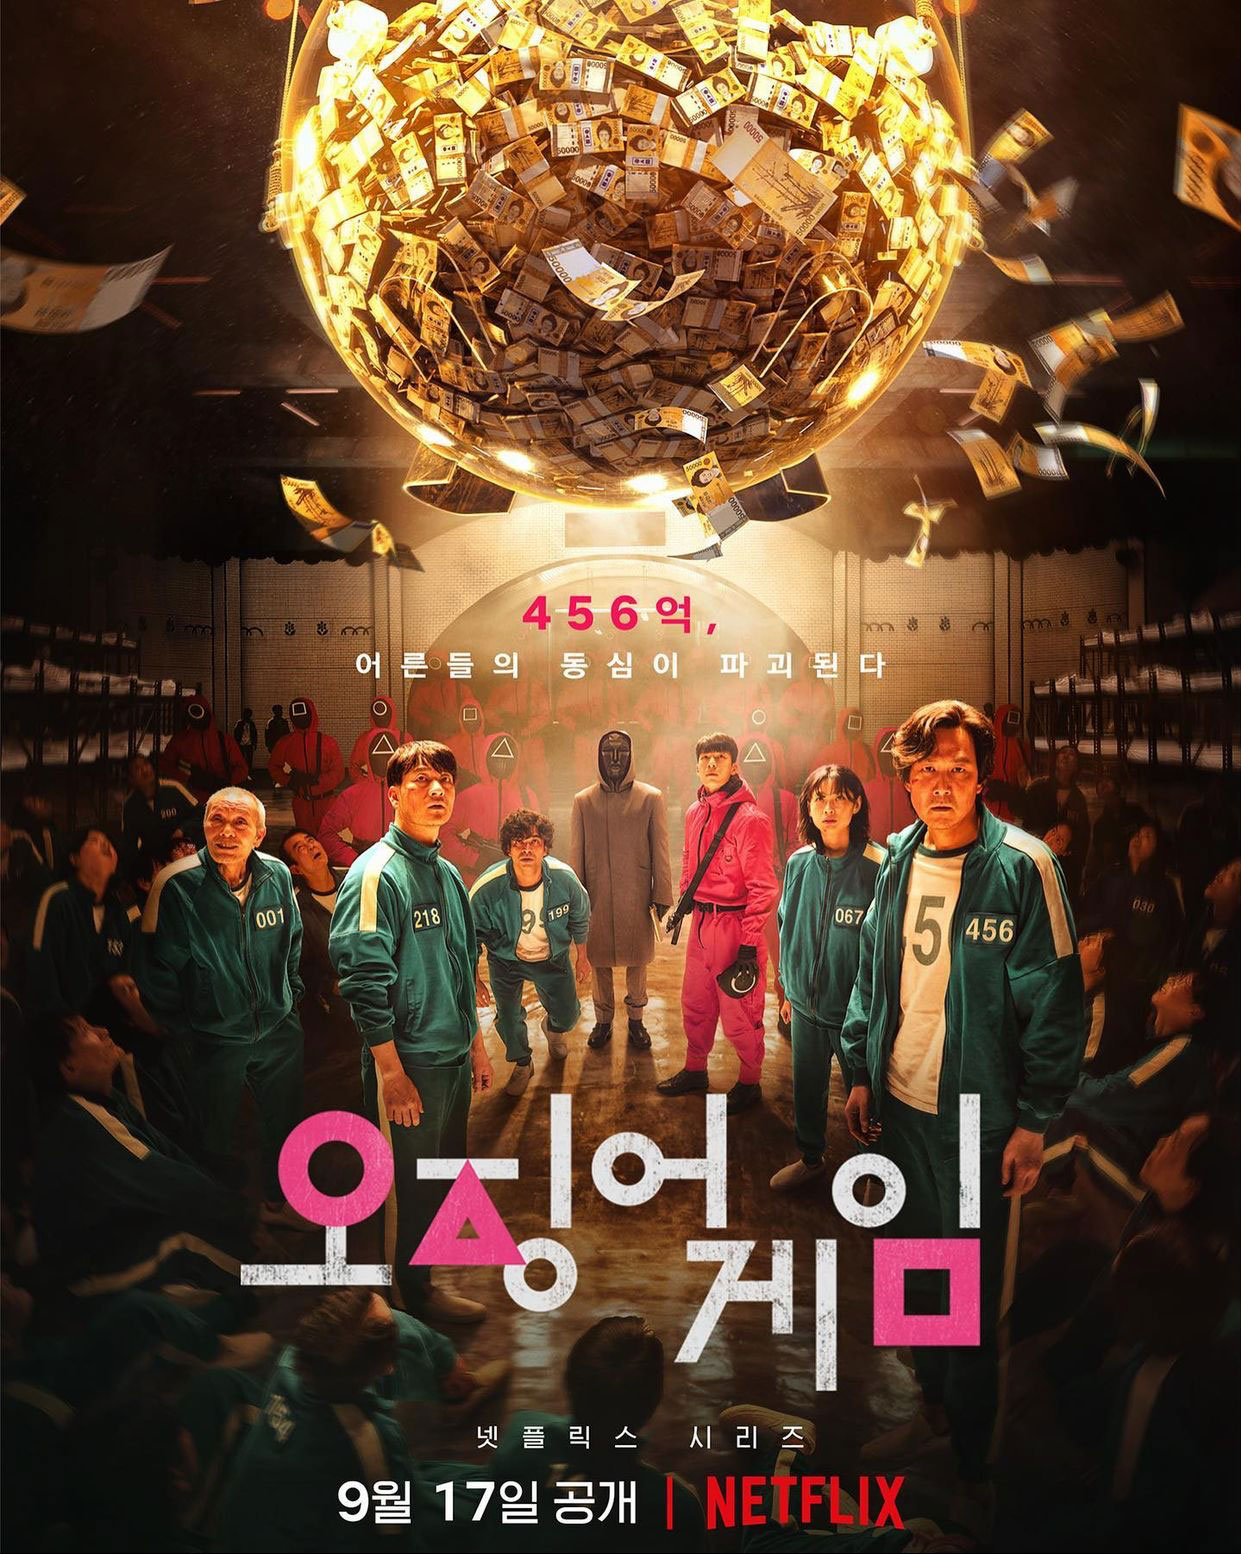 Phim cỗ Nước Hàn hoặc năm 2021: Trò nghịch tặc con cái mực - Squid Game